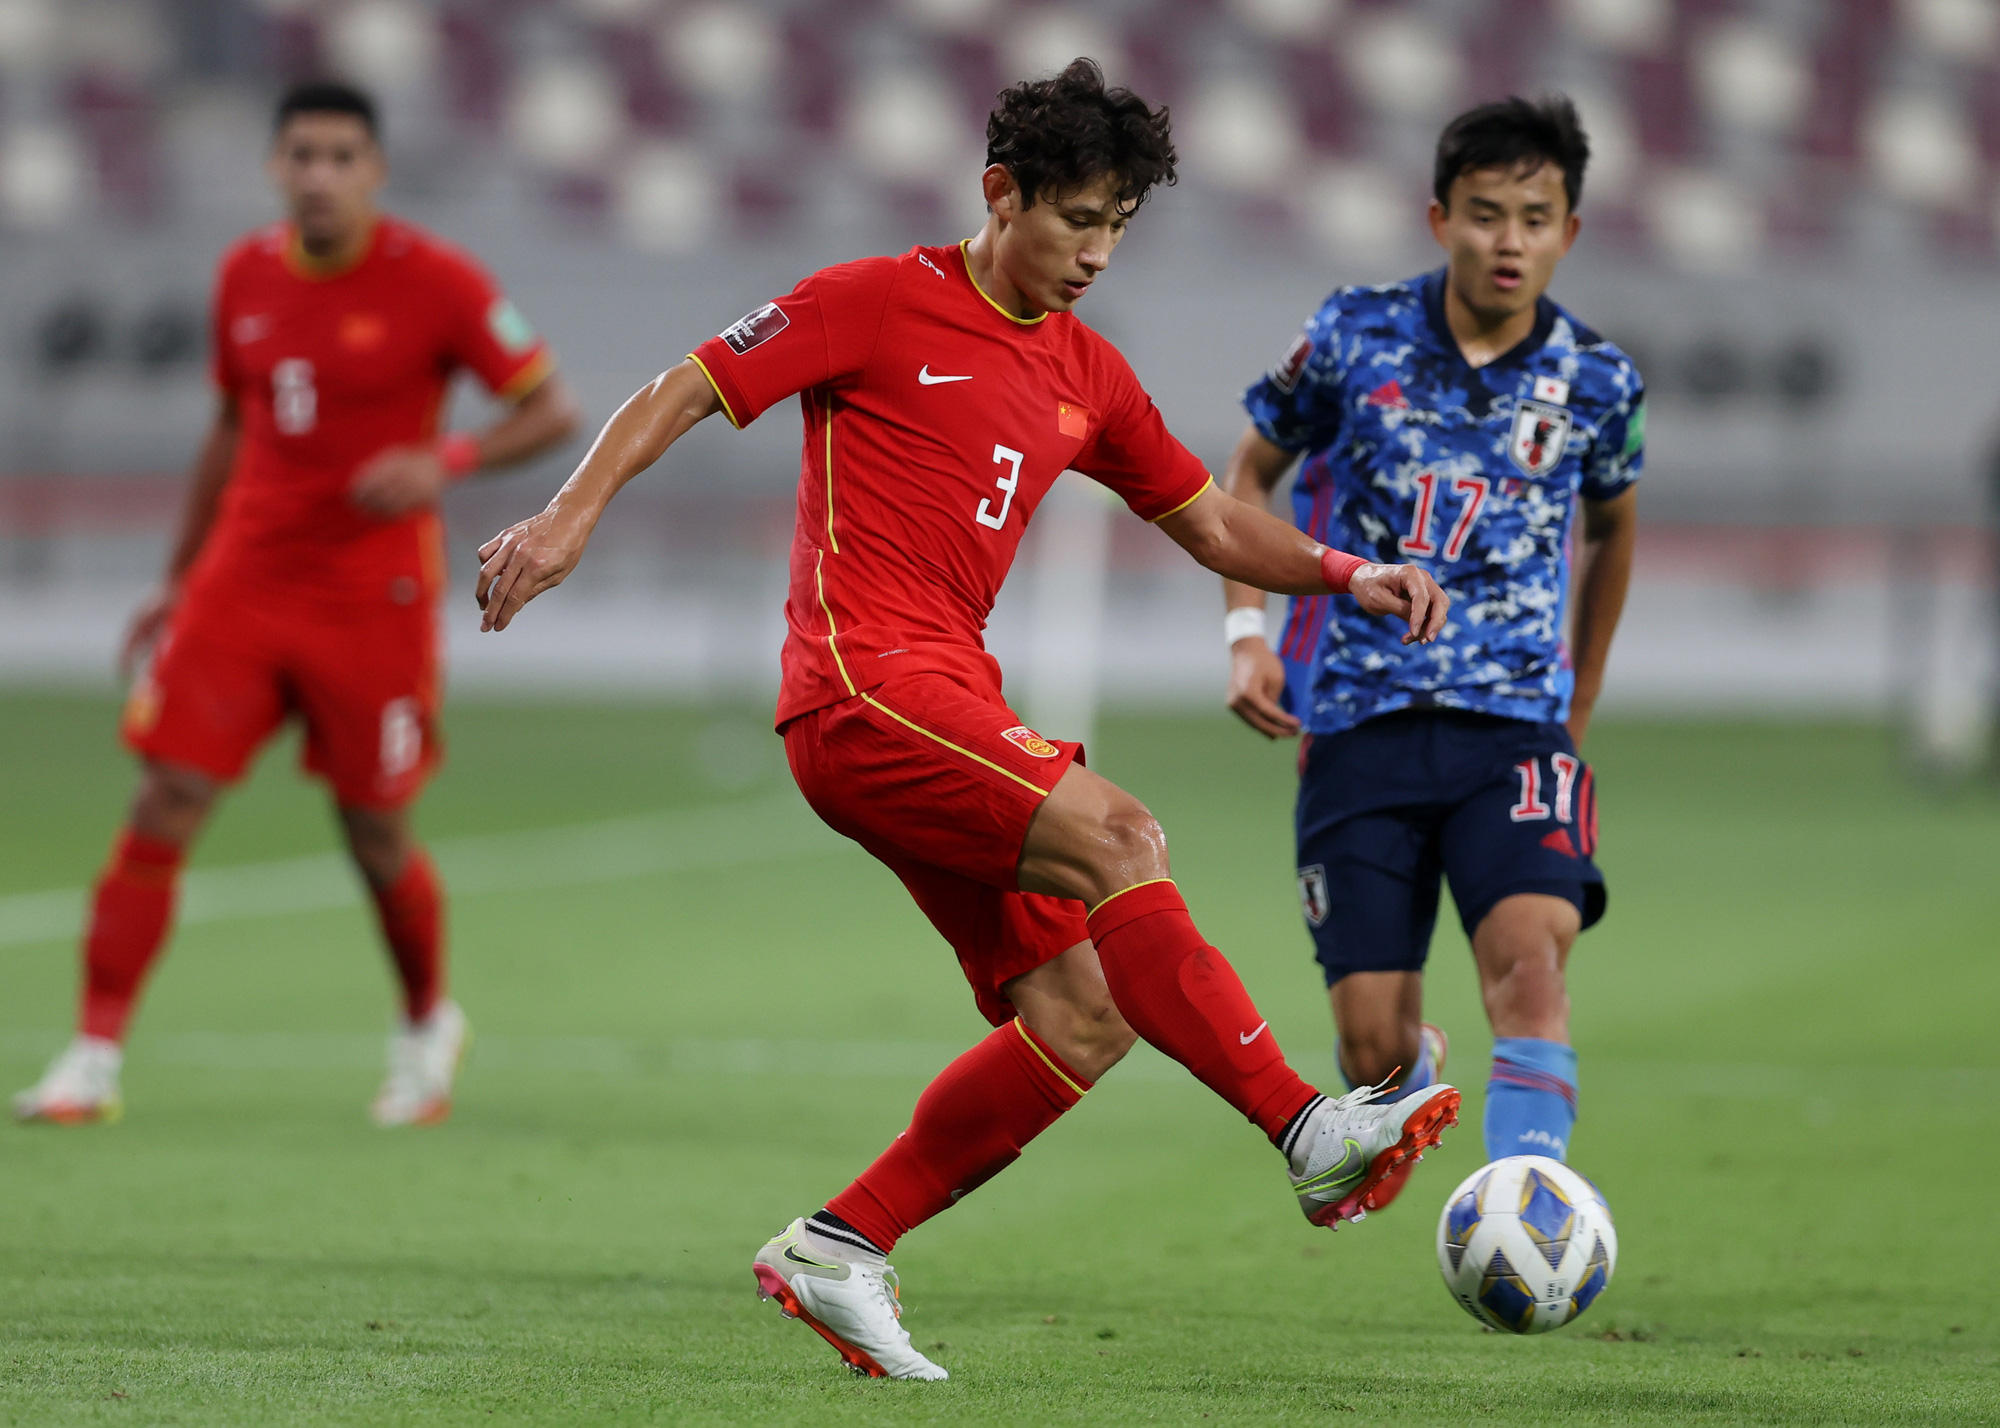 Trung Quốc vẫn chưa ghi được điểm nào ở vòng loại thứ 3 World Cup khu vực châu Á